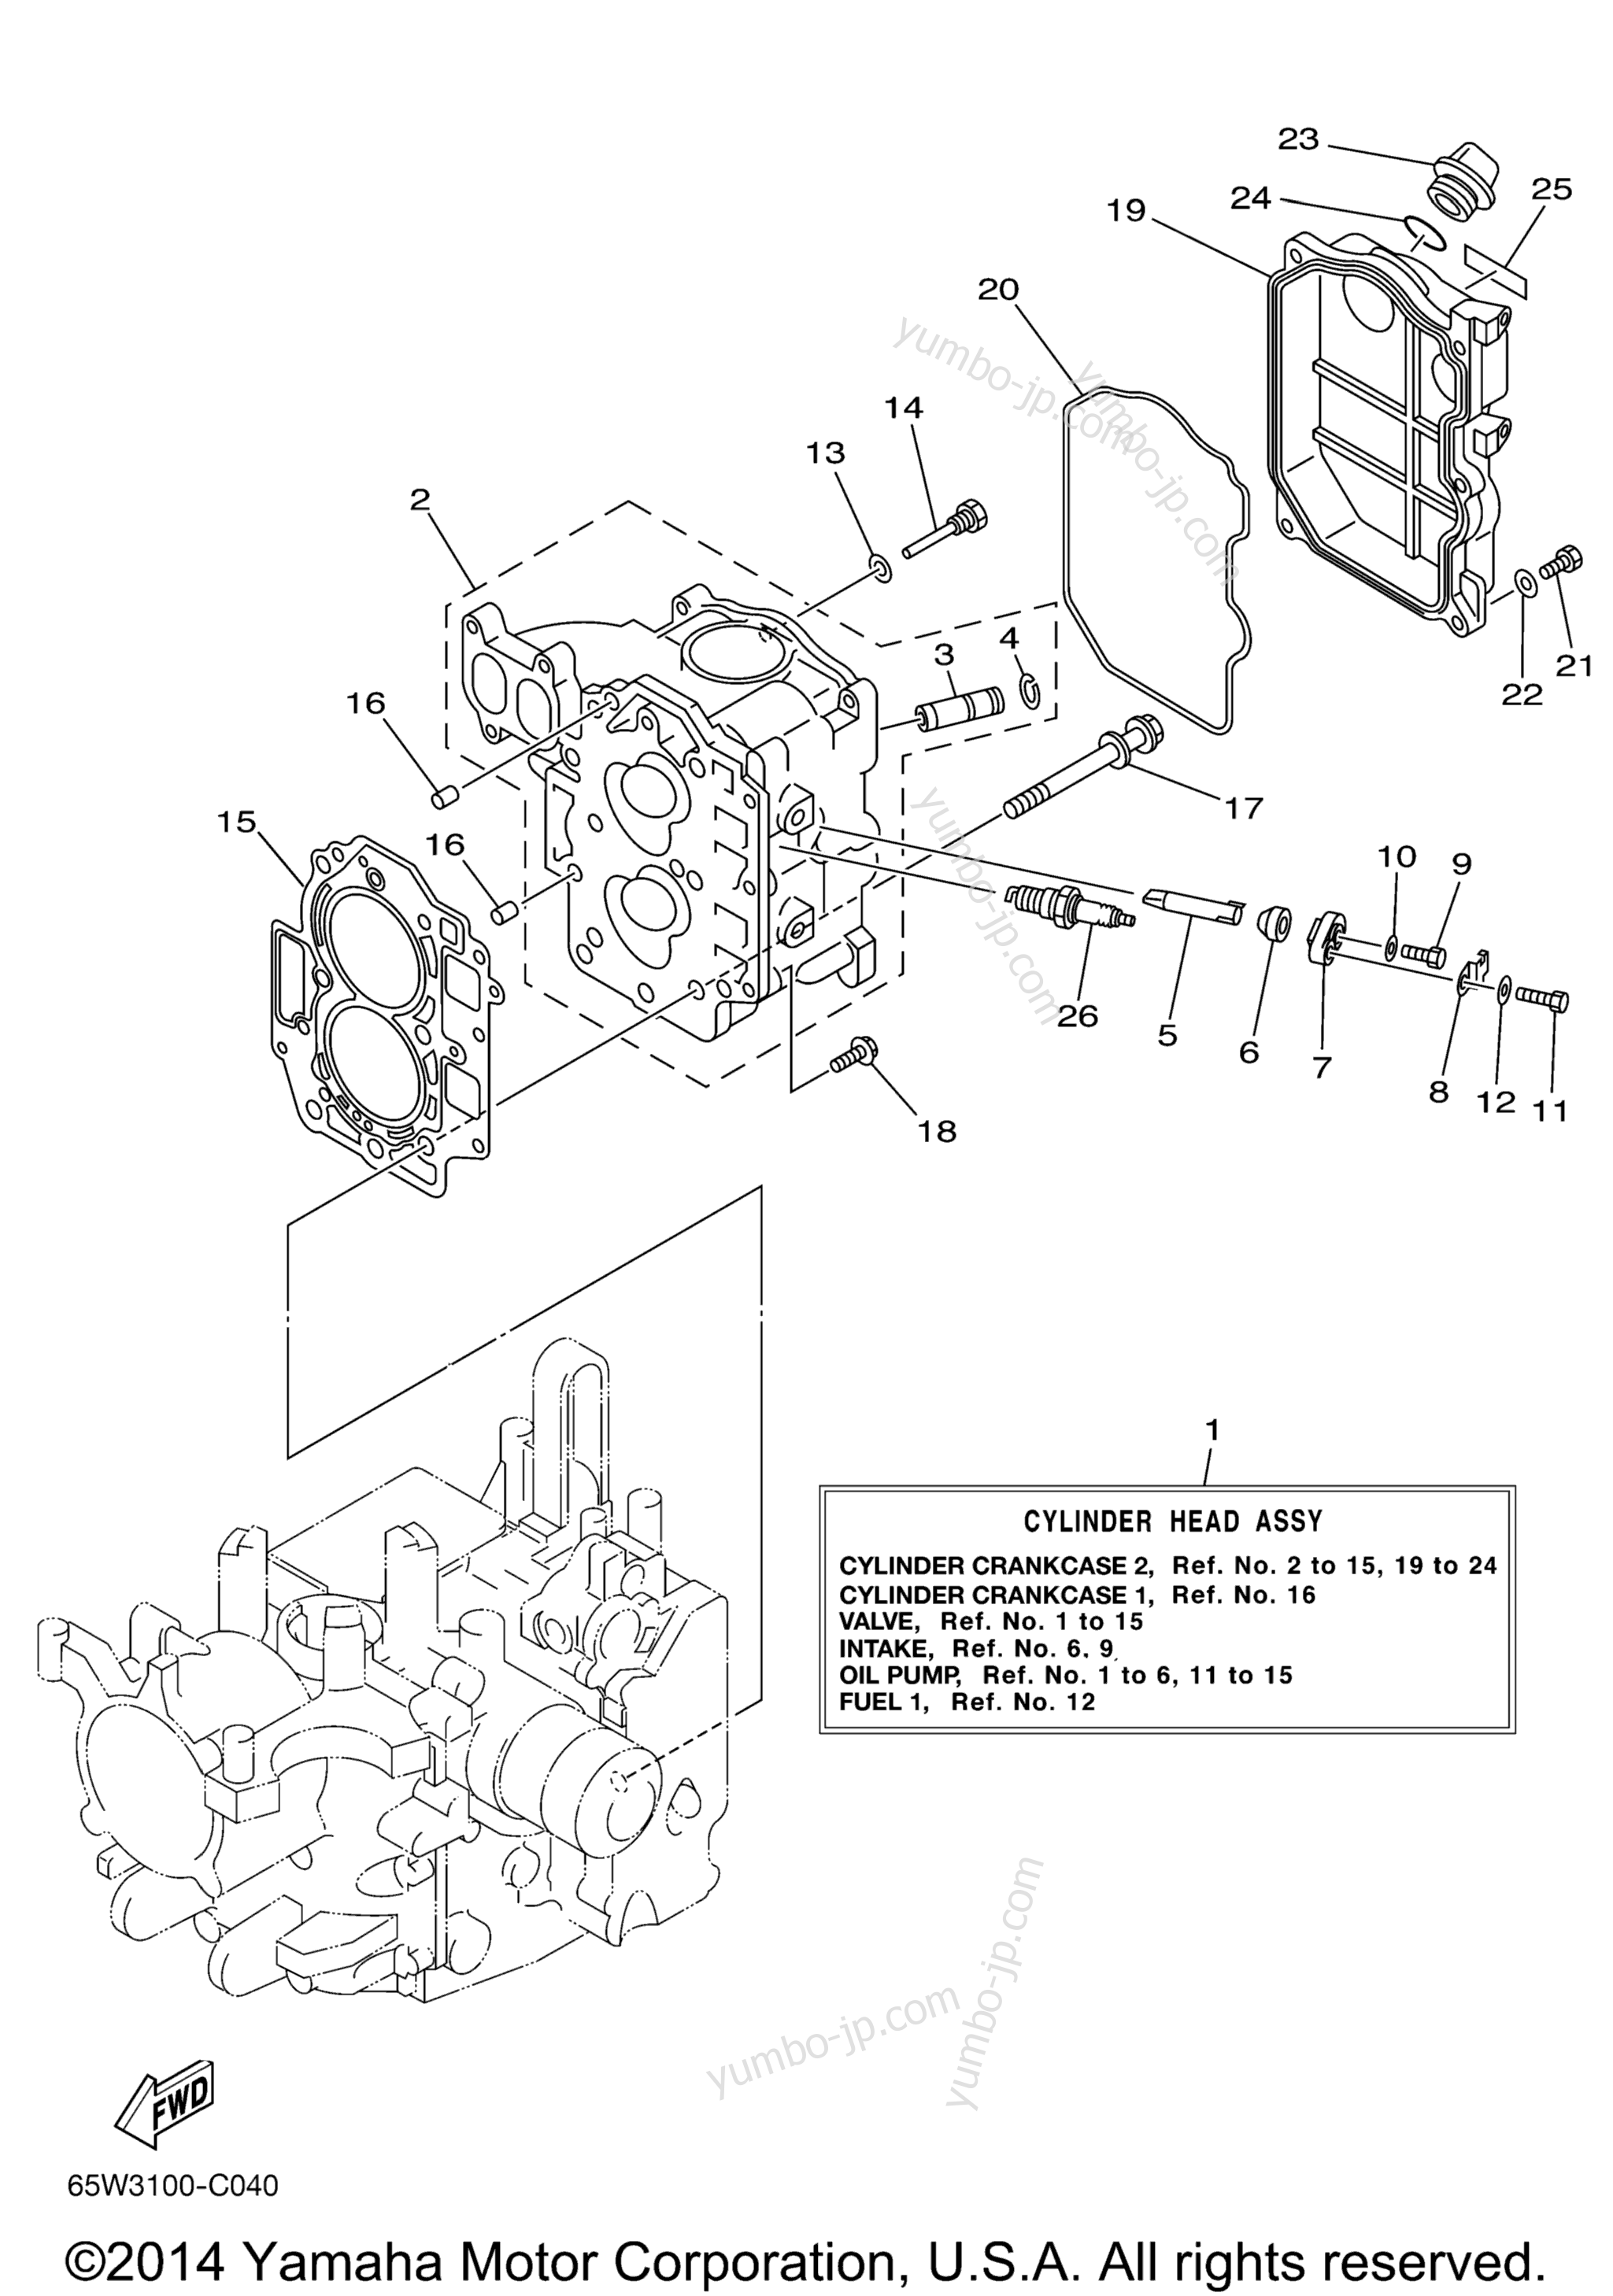 Cylinder Crankcase 2 для лодочных моторов YAMAHA T25TLR (0405) 65W-1015569~1033208 2006 г.